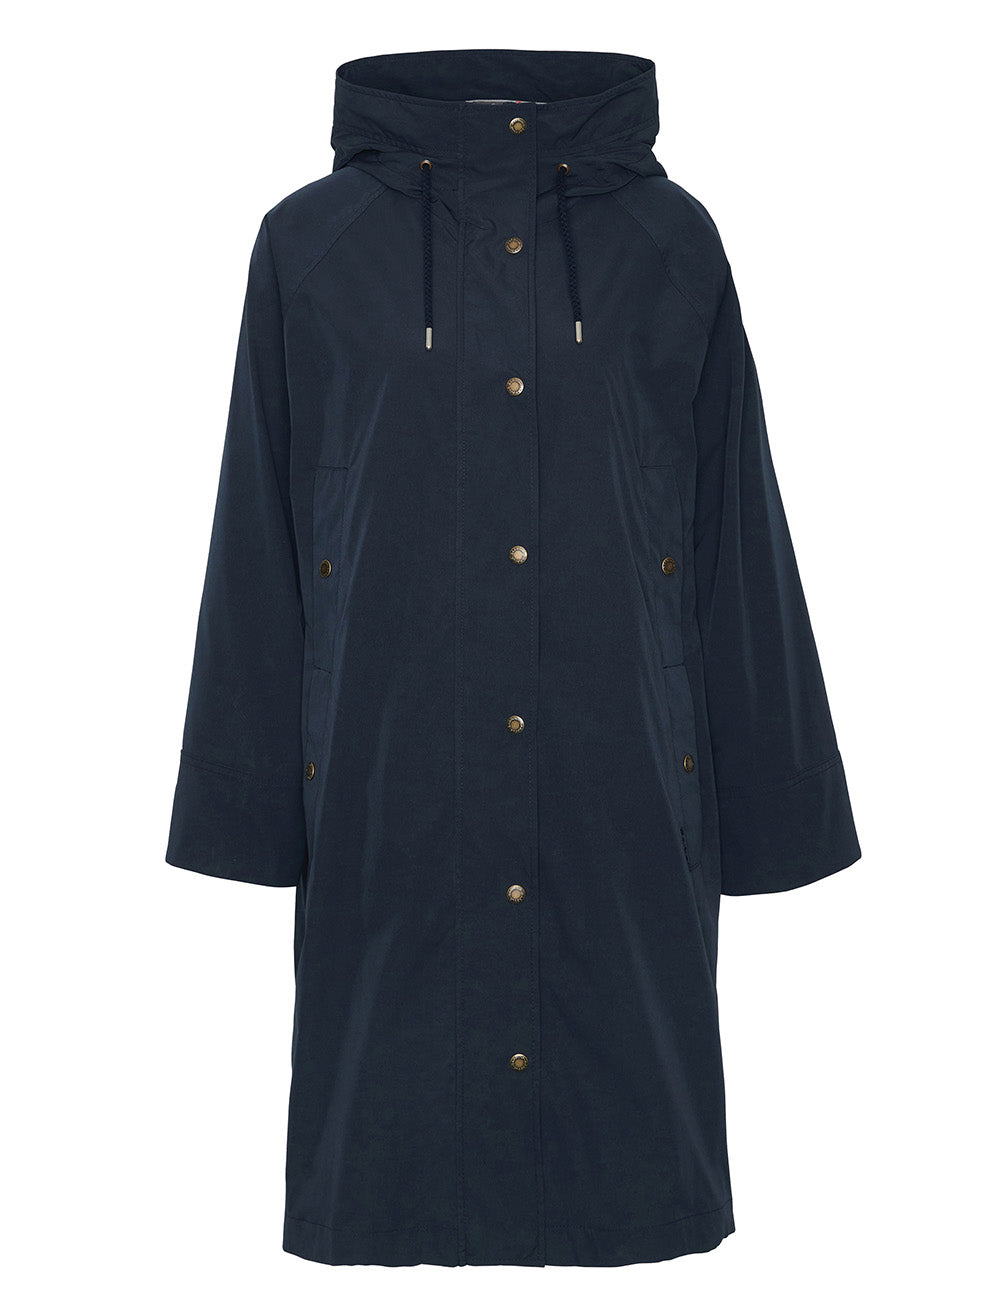 Barbour Robin Showerproof Jacket - Dark Navy/Dress